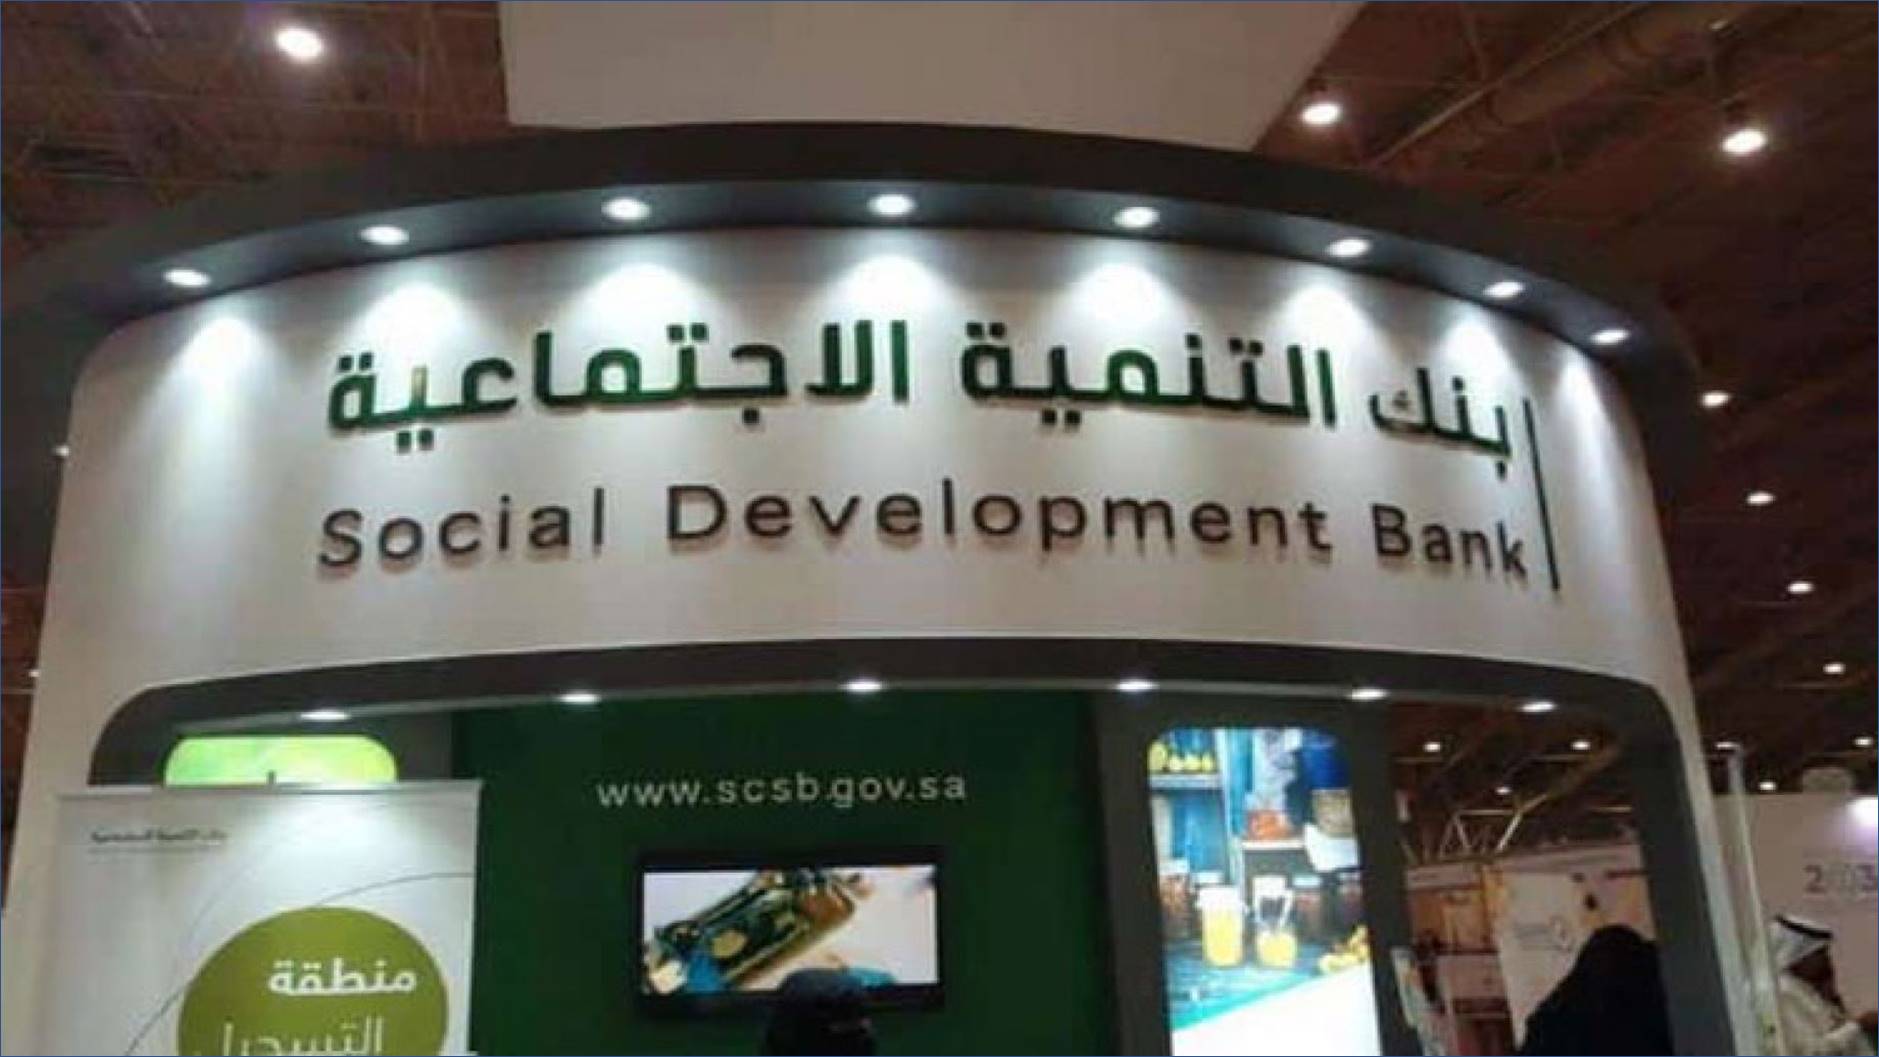 وظائف إدارية في بنك التنمية الاجتماعية لحديثي التخرج والخبرة